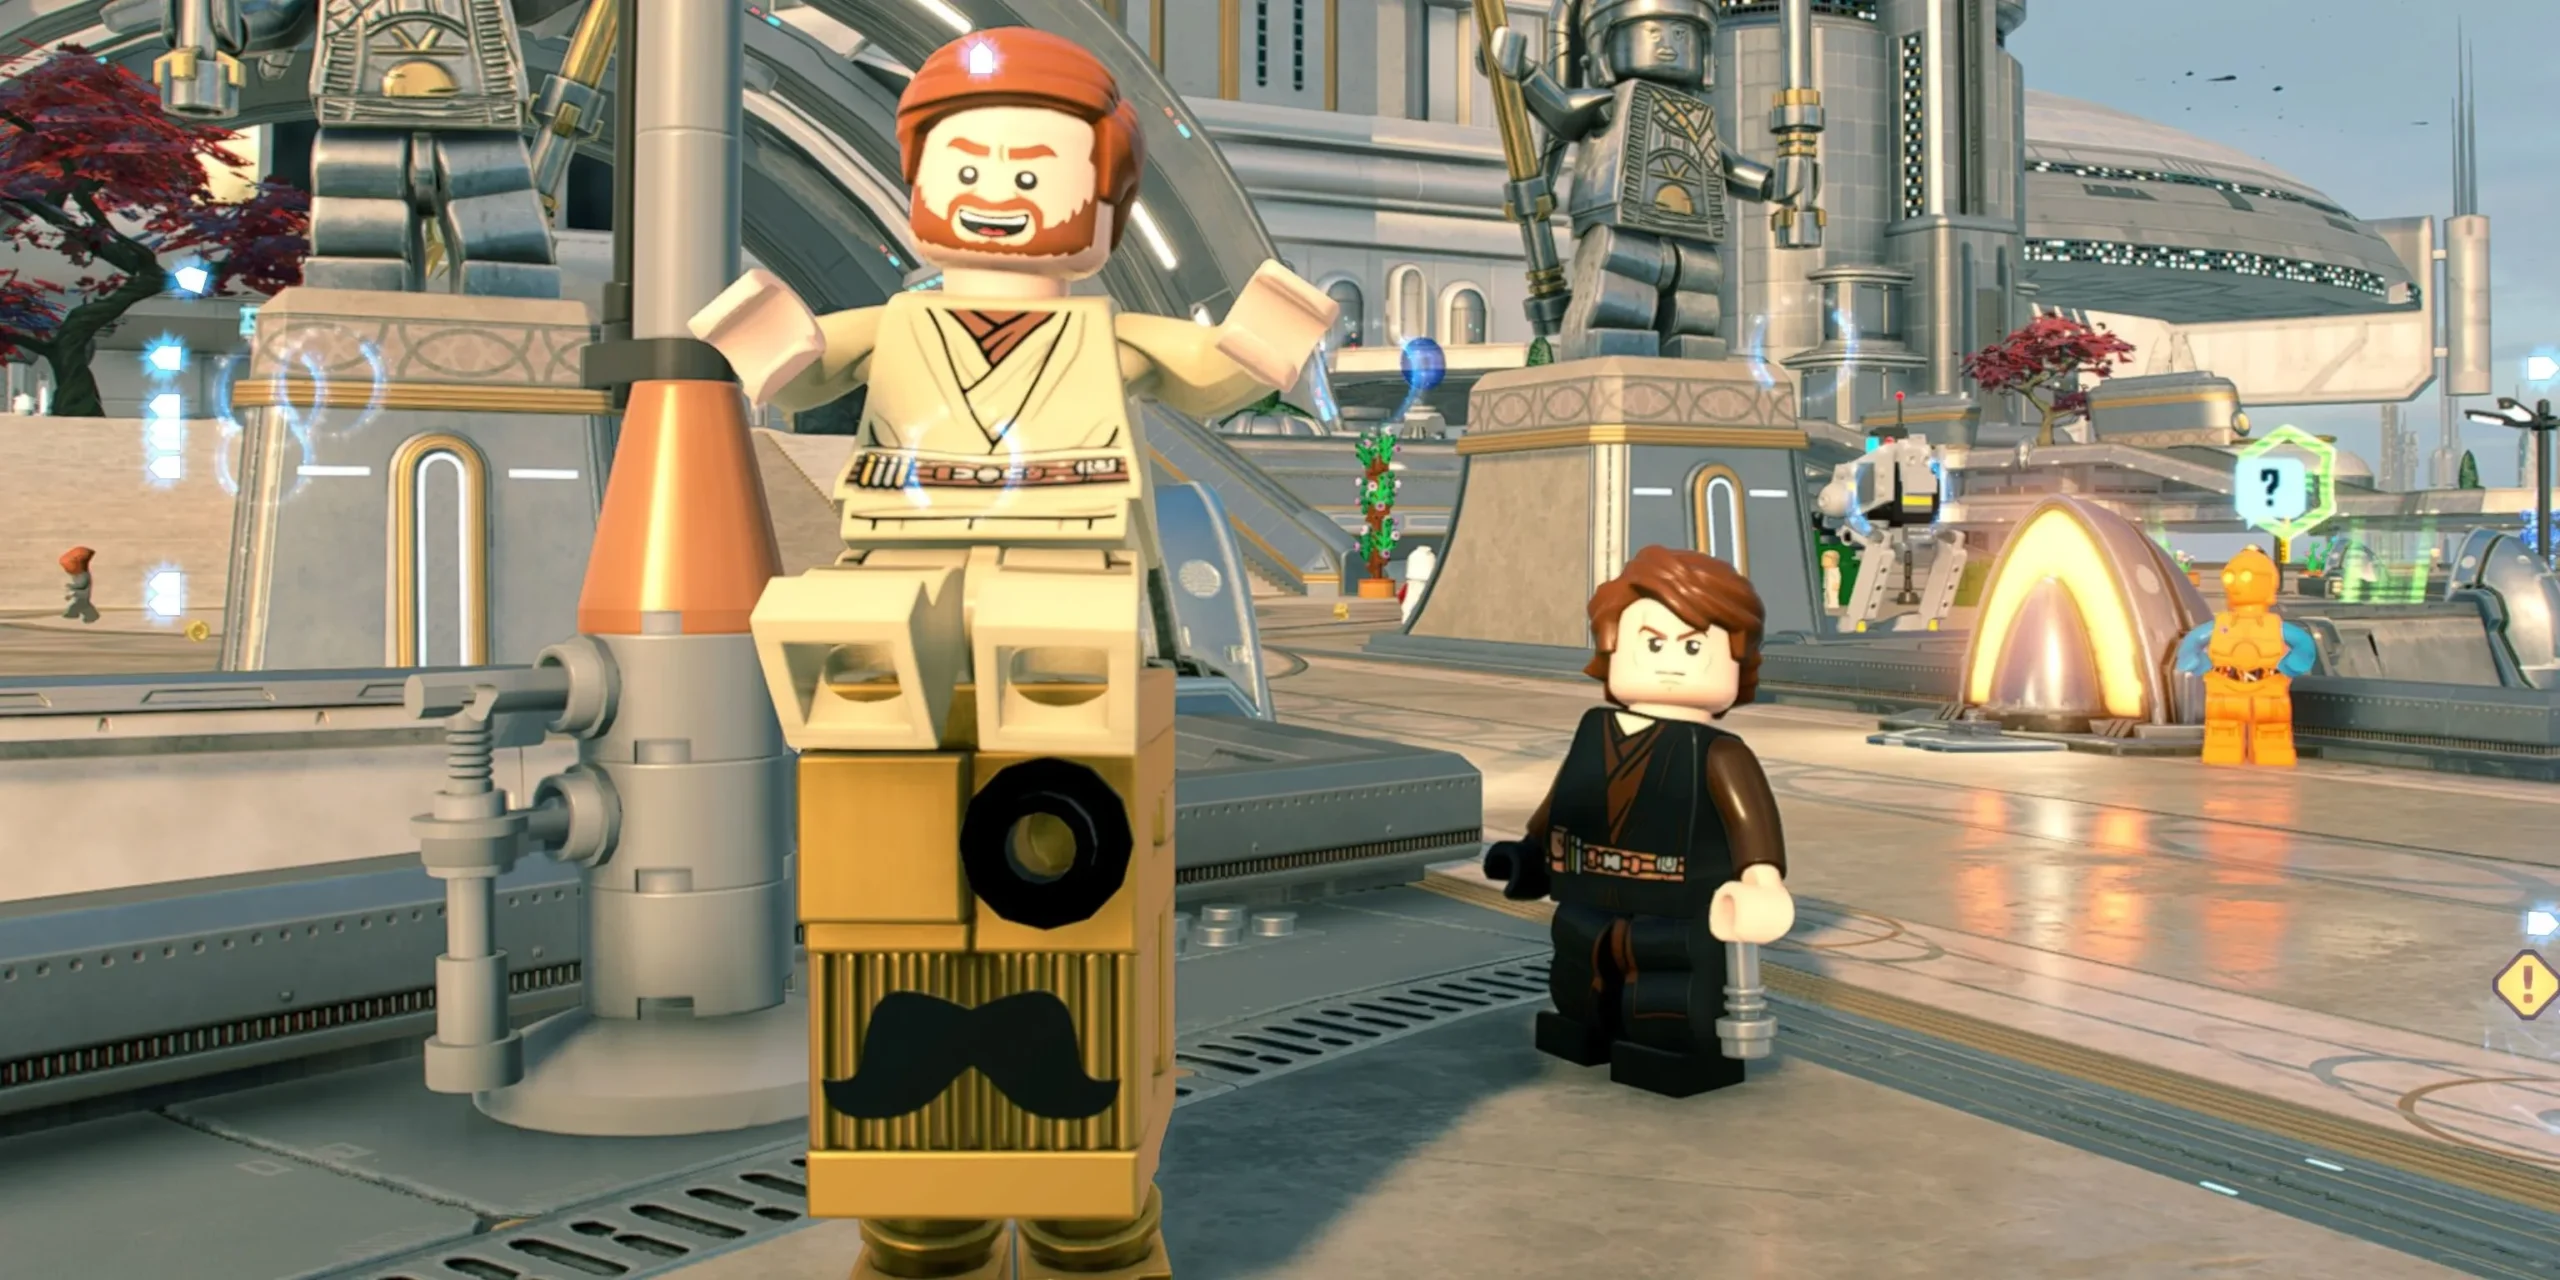 Obi-Wan Kenobi jadący na złotym droidzie gonk z Anakinem